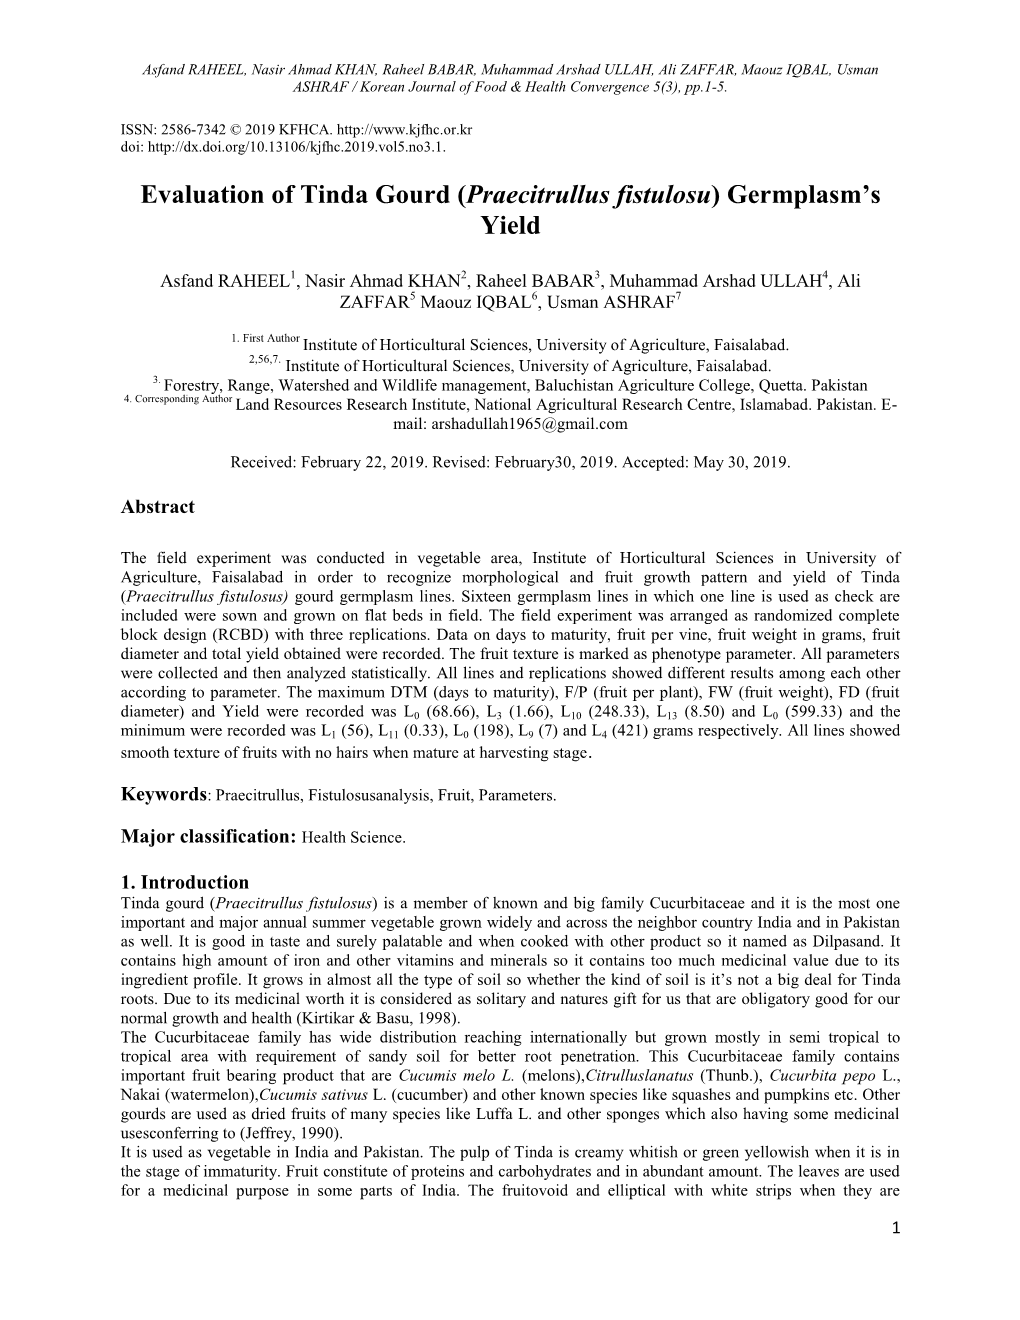 Evaluation of Tinda Gourd (Praecitrullus Fistulosu) Germplasm’S Yield